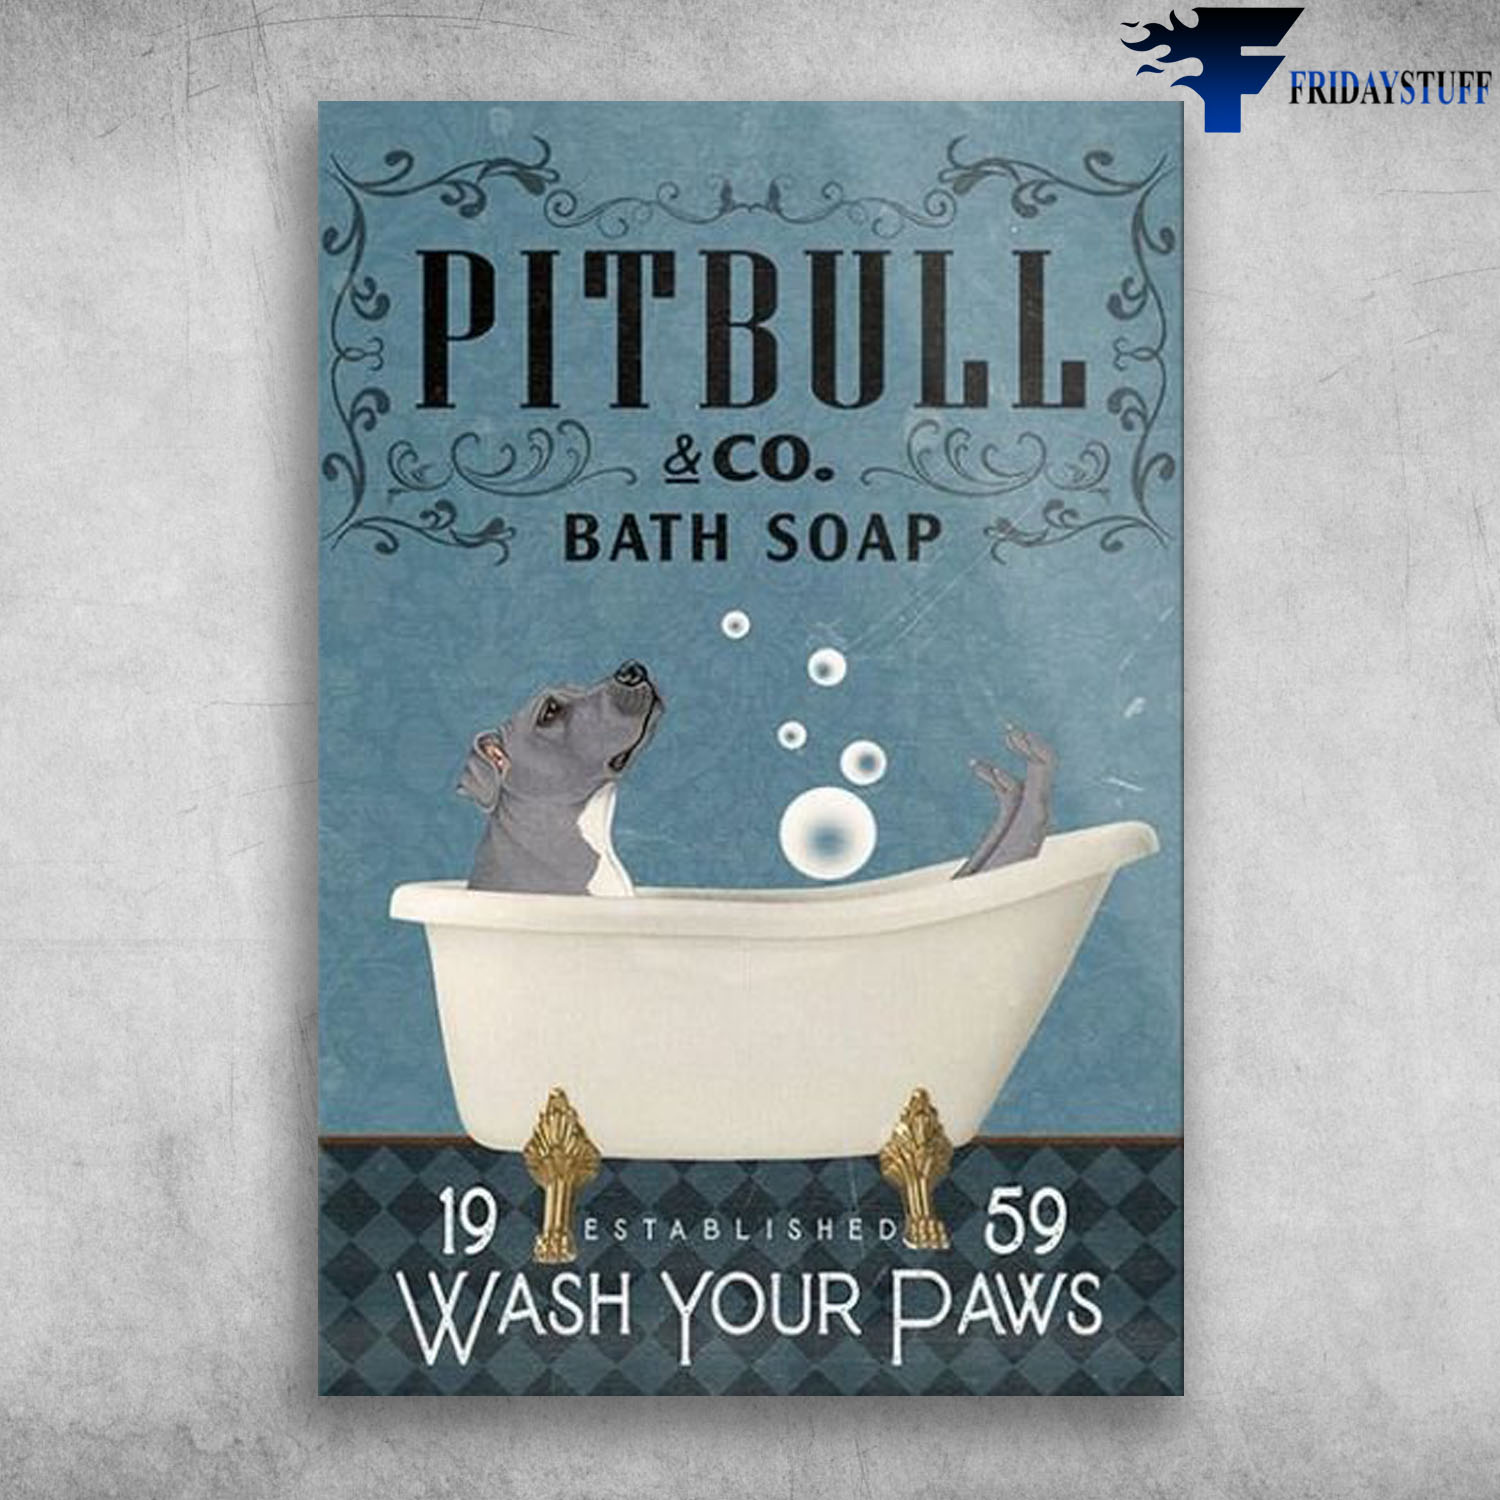 Pitbull In Bathtub Bath Soap Established Wash Your Paws